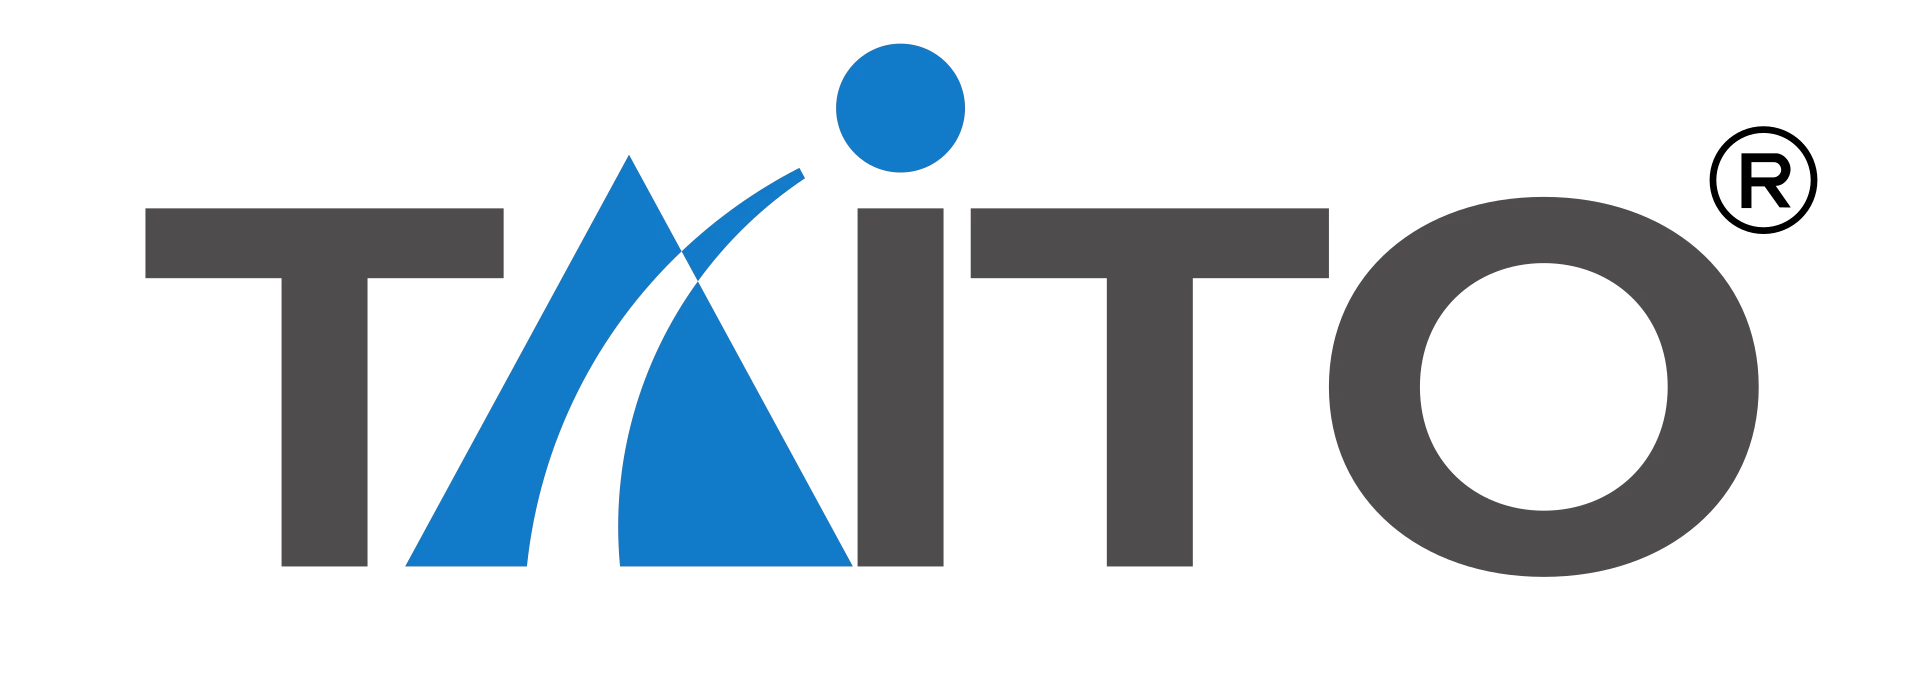 Taito developer logo